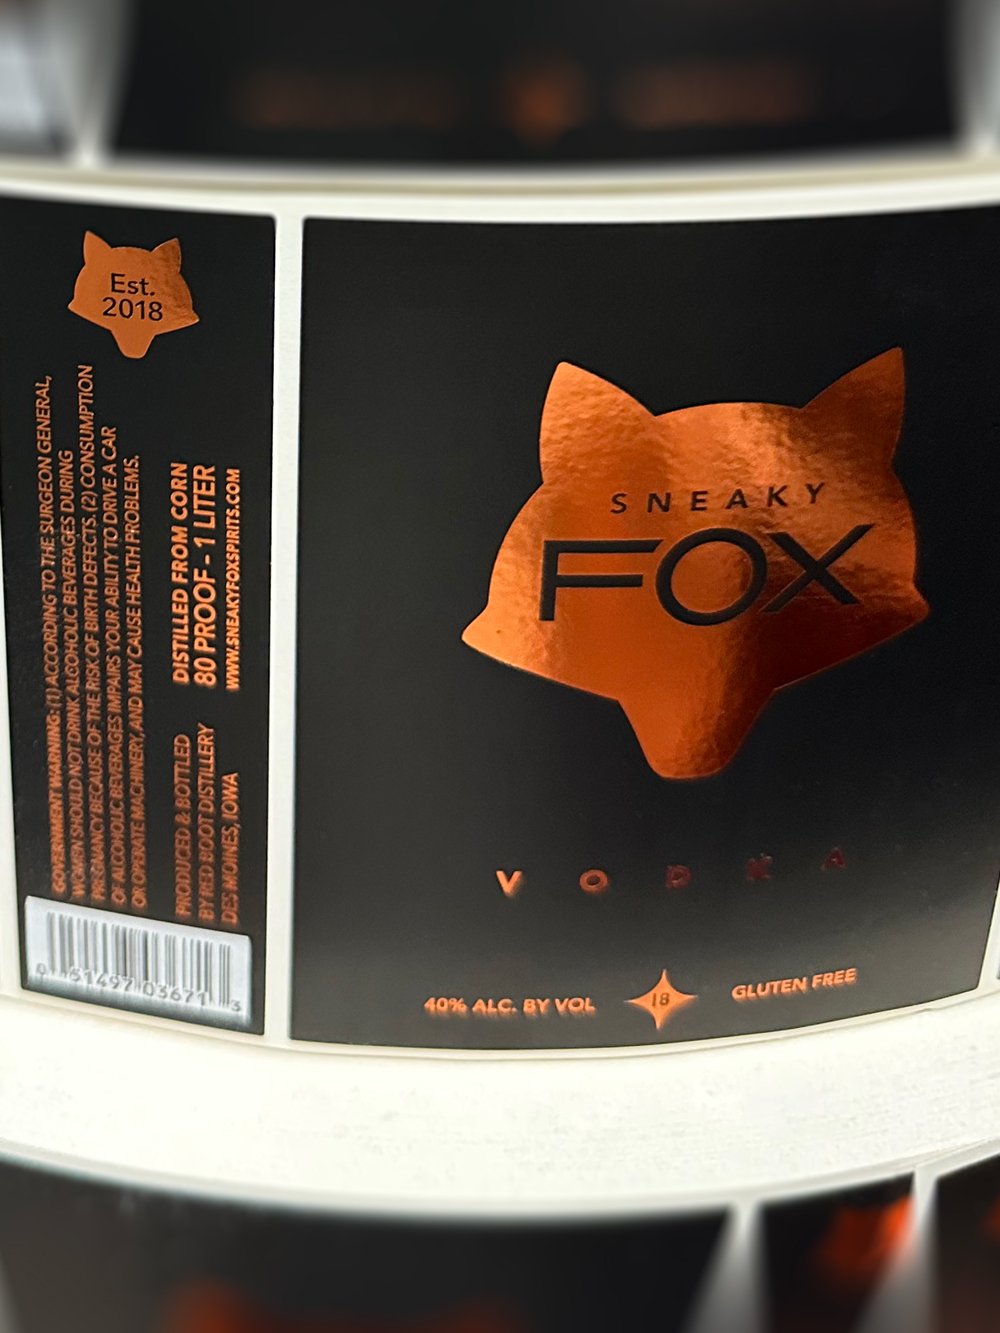 Custom-Label-Manufacturers-Chicago-Liquor-Bottles-Sneaky-Fox-3.jpg